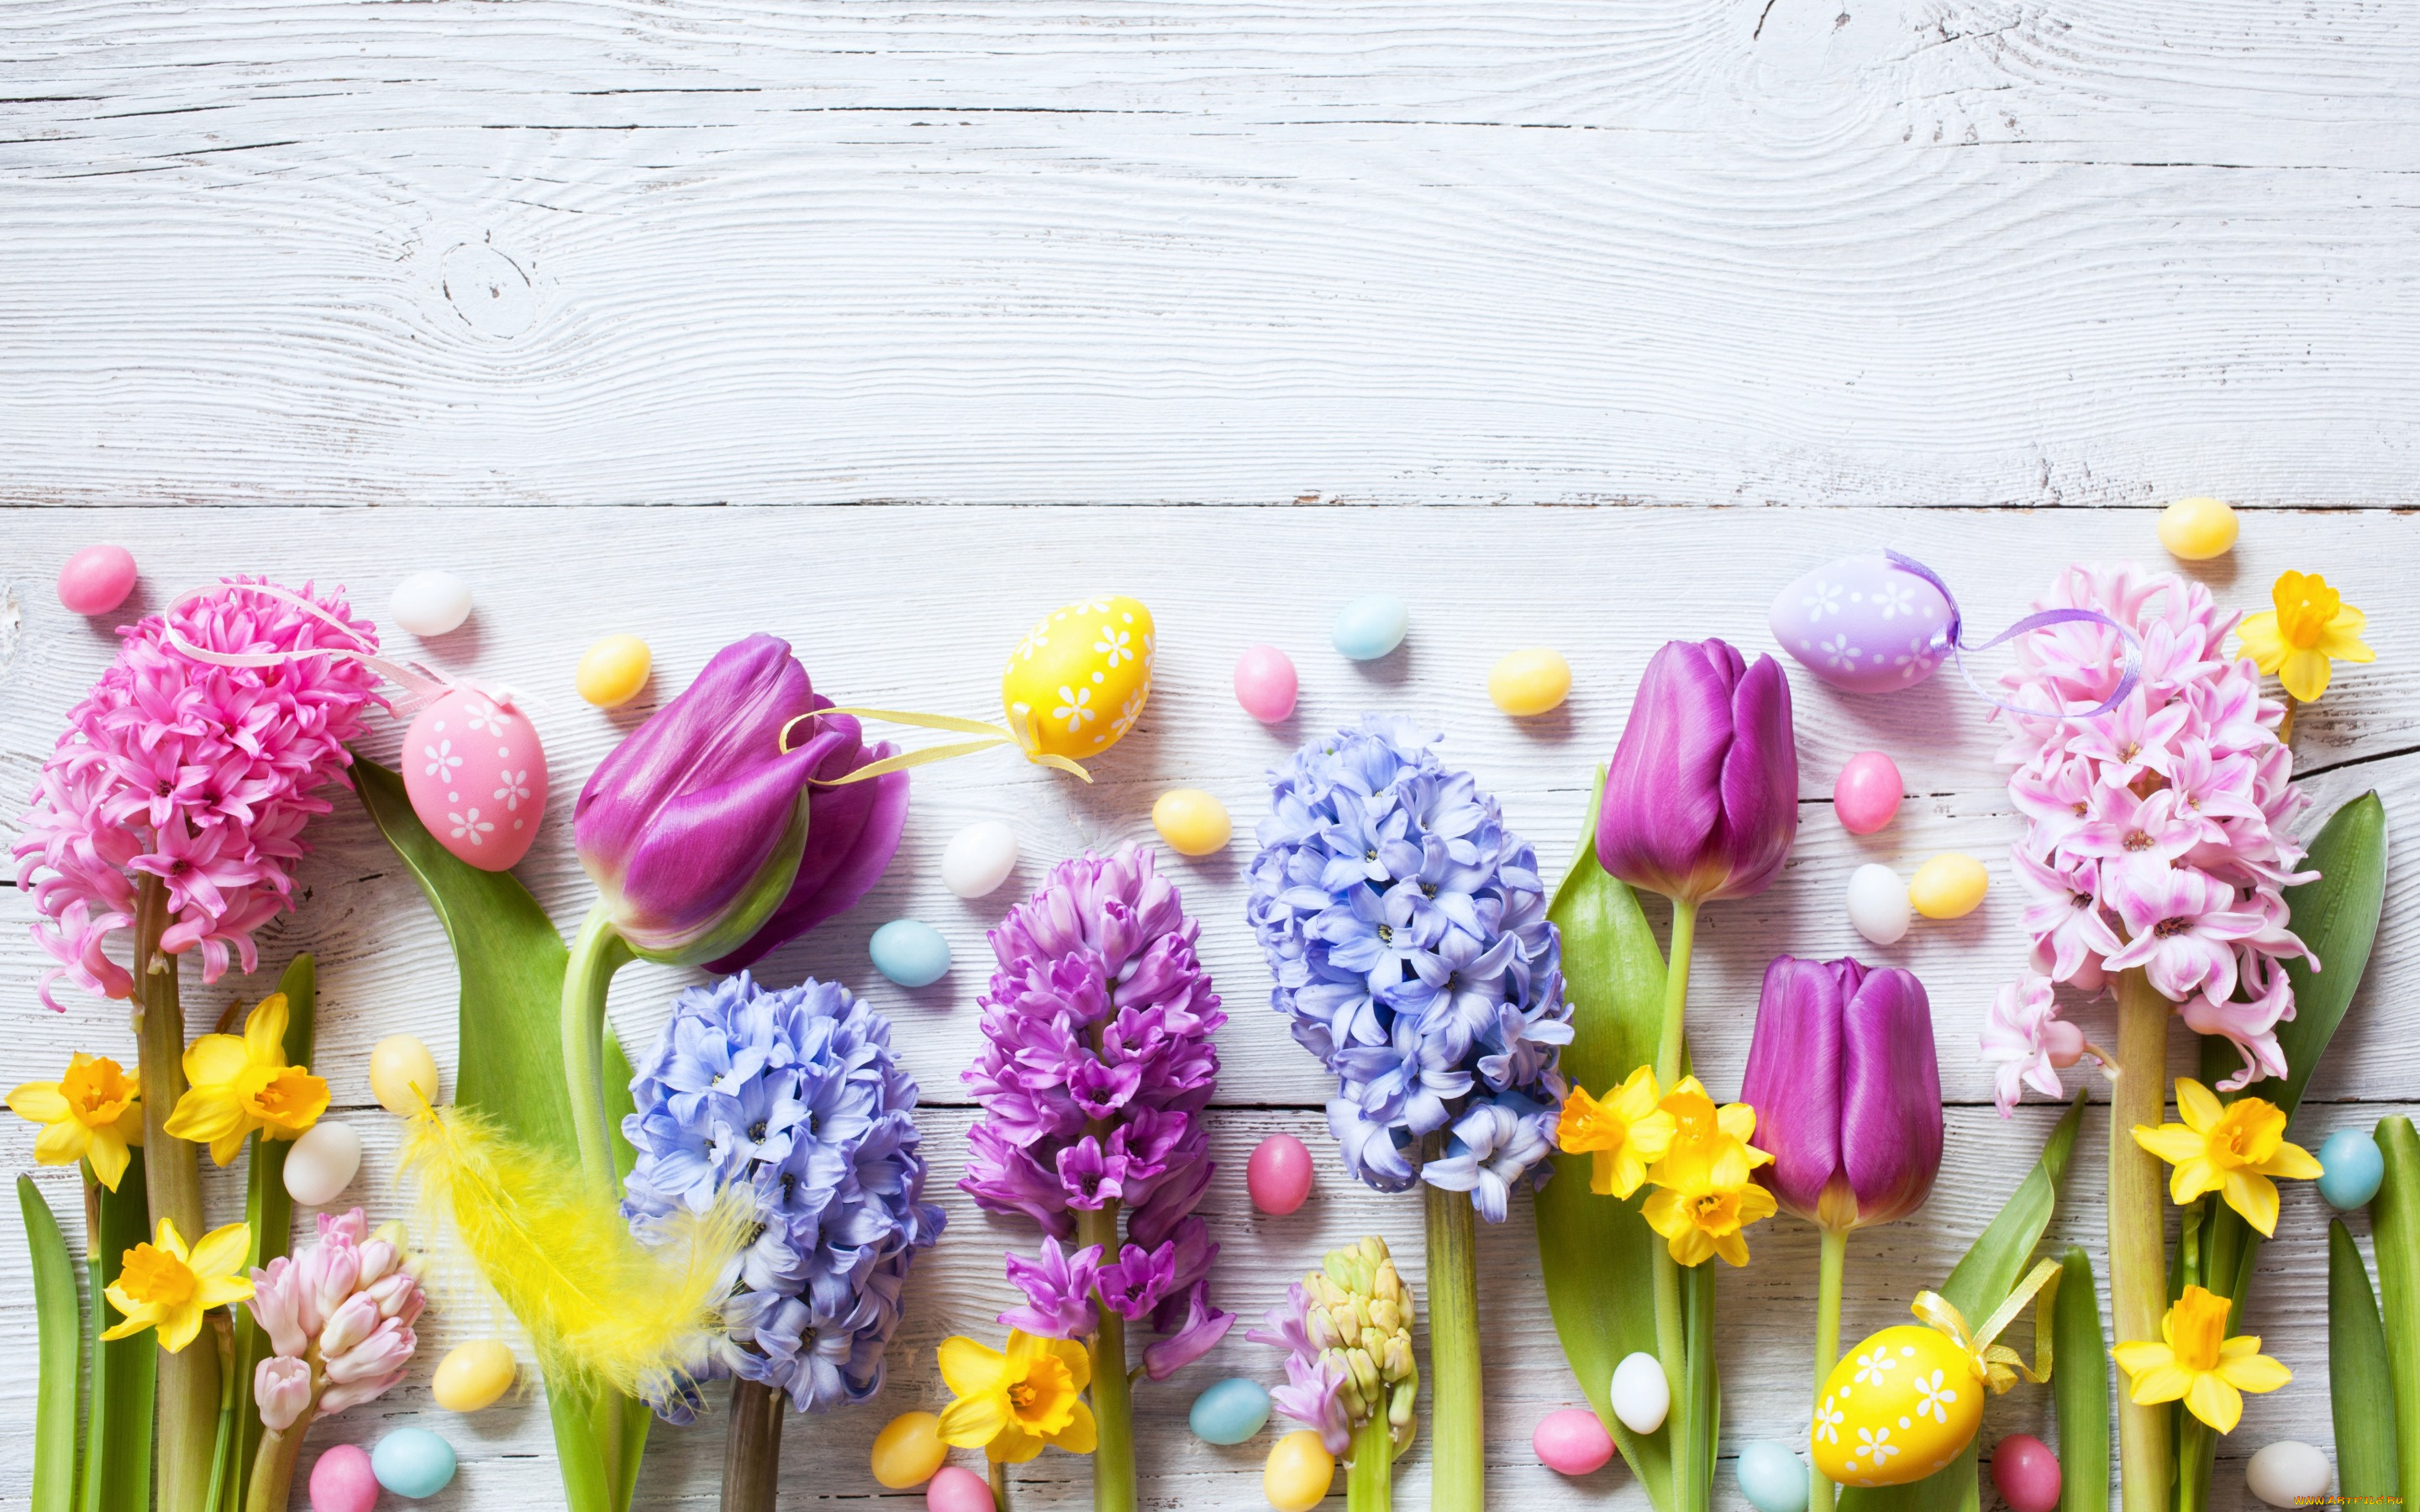 праздничные, пасха, цветы, flowers, eggs, tulips, wood, decoration, happy, spring, яйца, крашеные, крокусы, тюльпаны, нарциссы, easter, colorful, весна